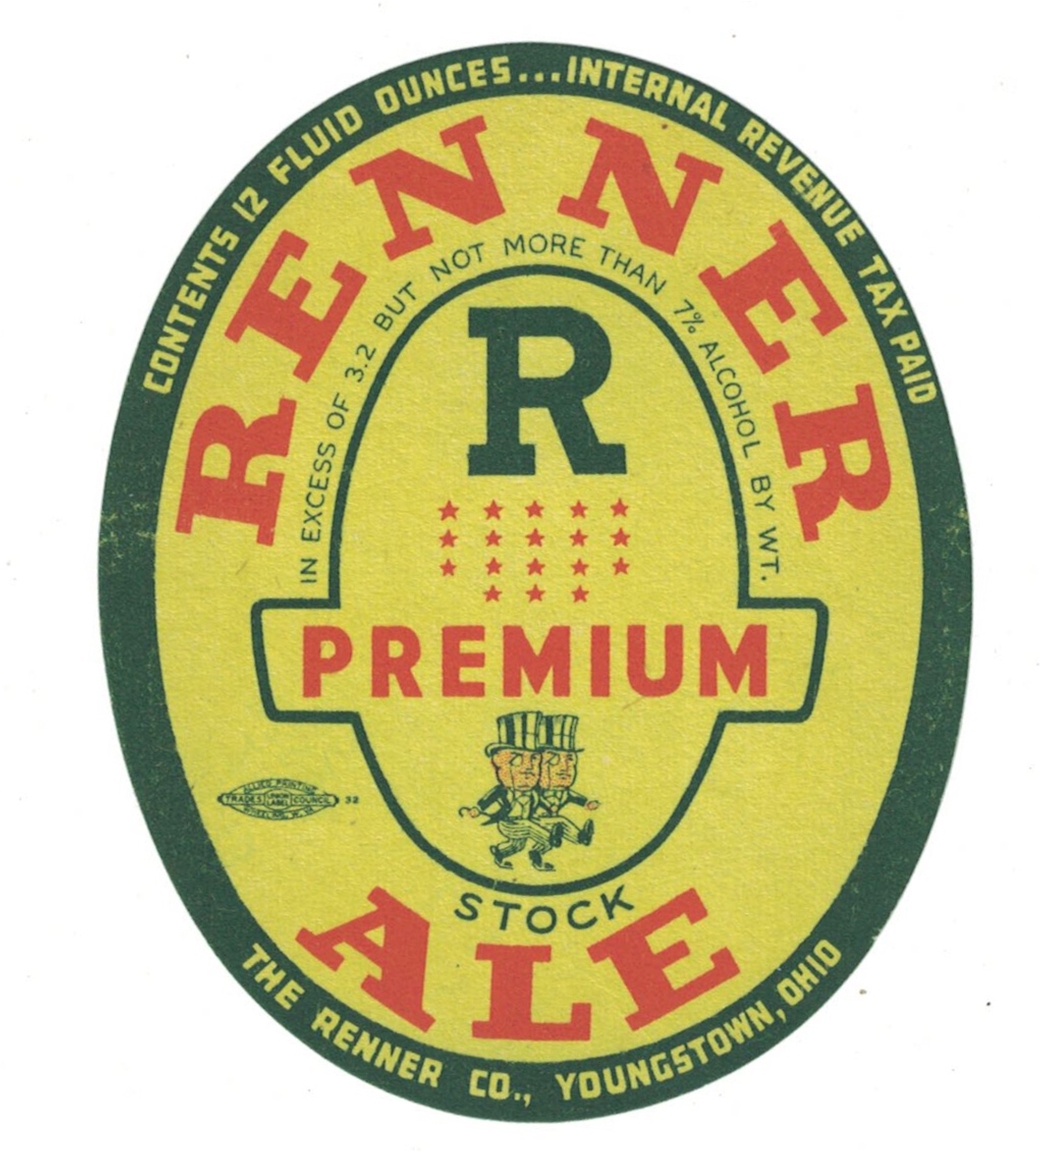 Renner Premium Ale IRTP Label